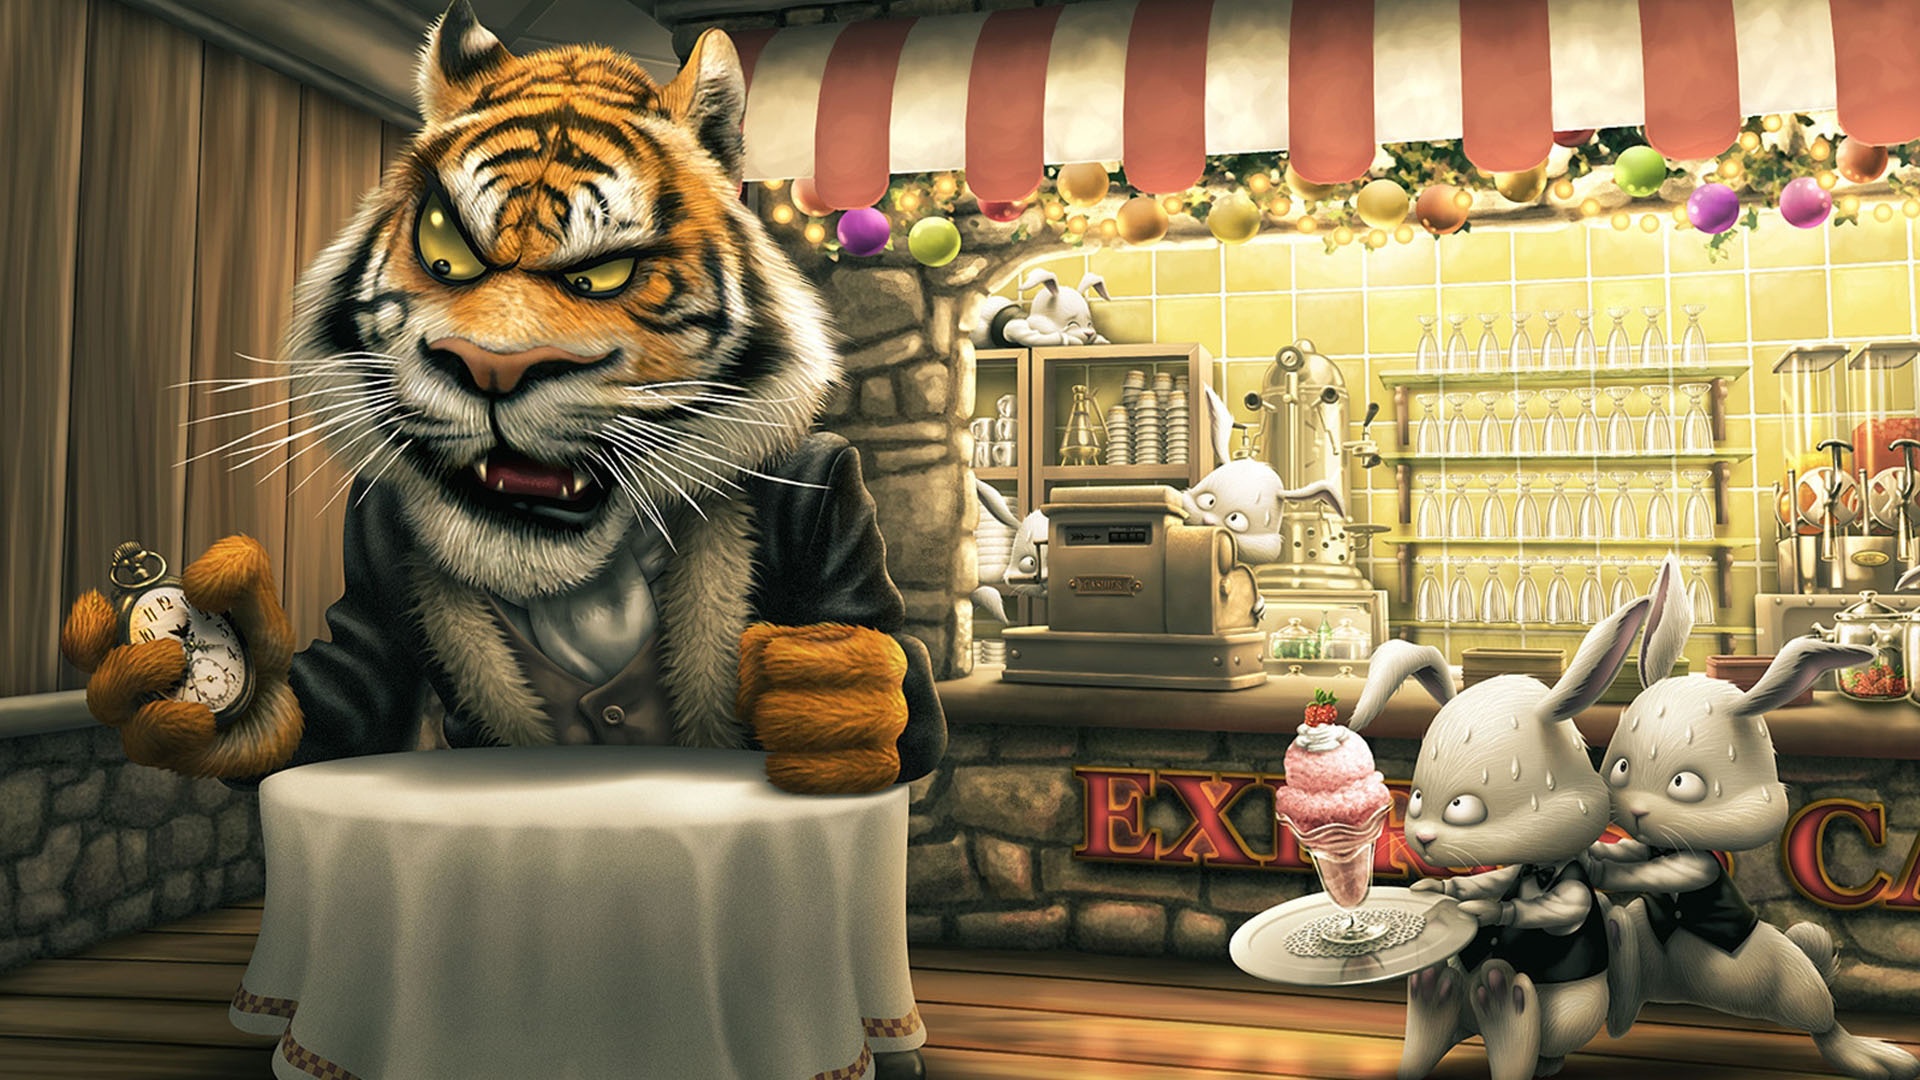 Descarga gratuita de fondo de pantalla para móvil de Dibujos Animados, Humor, Animales, Tigre.